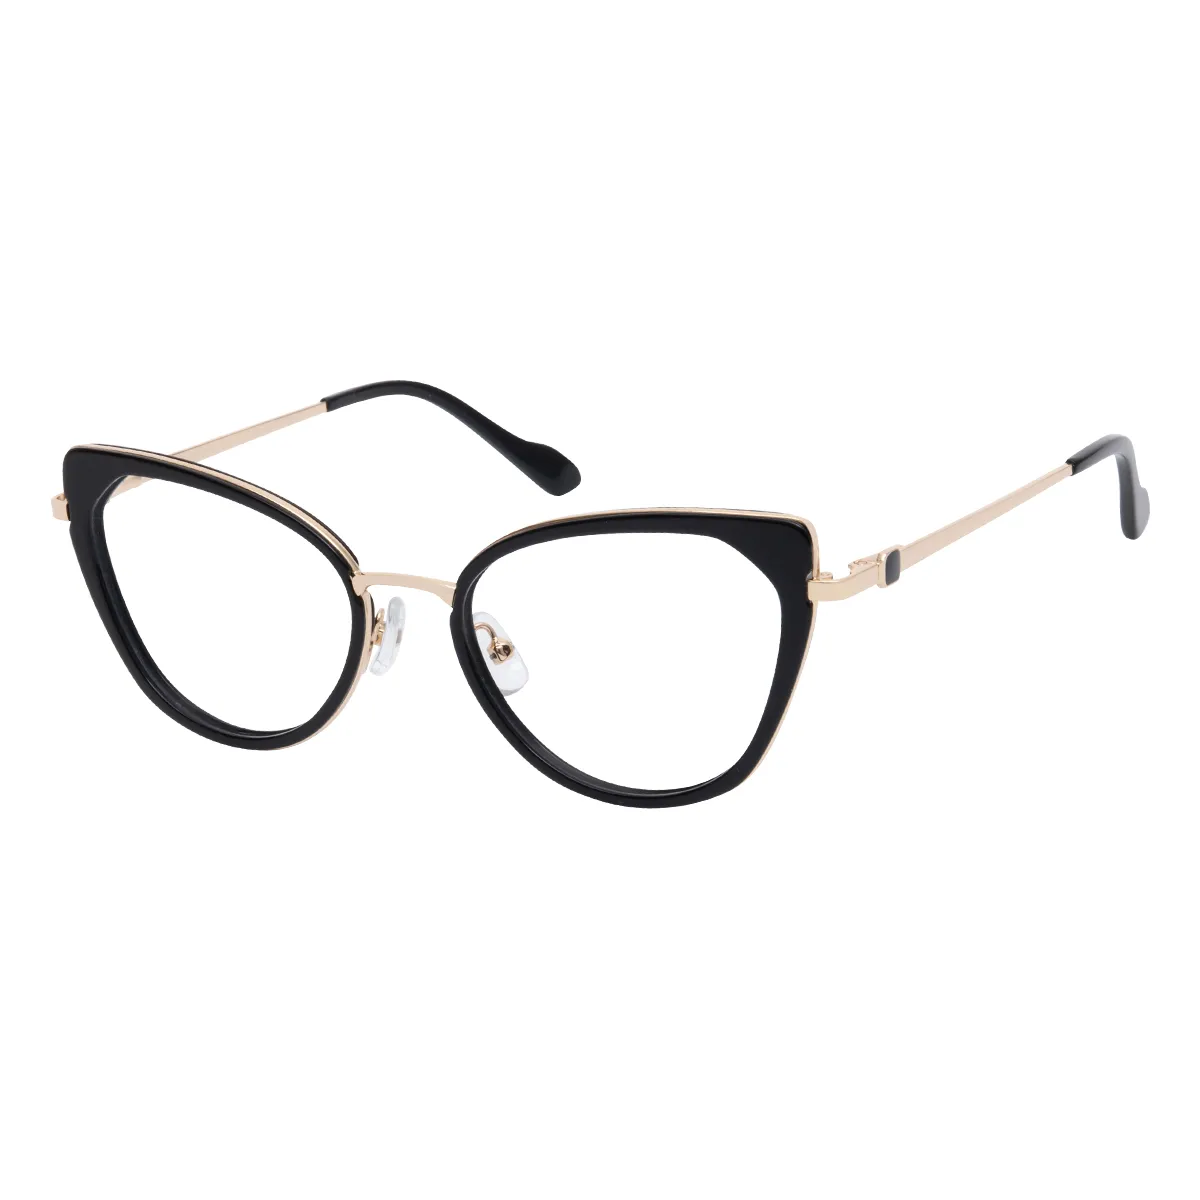 Mireille - Cat-eye Black Glasses for Women